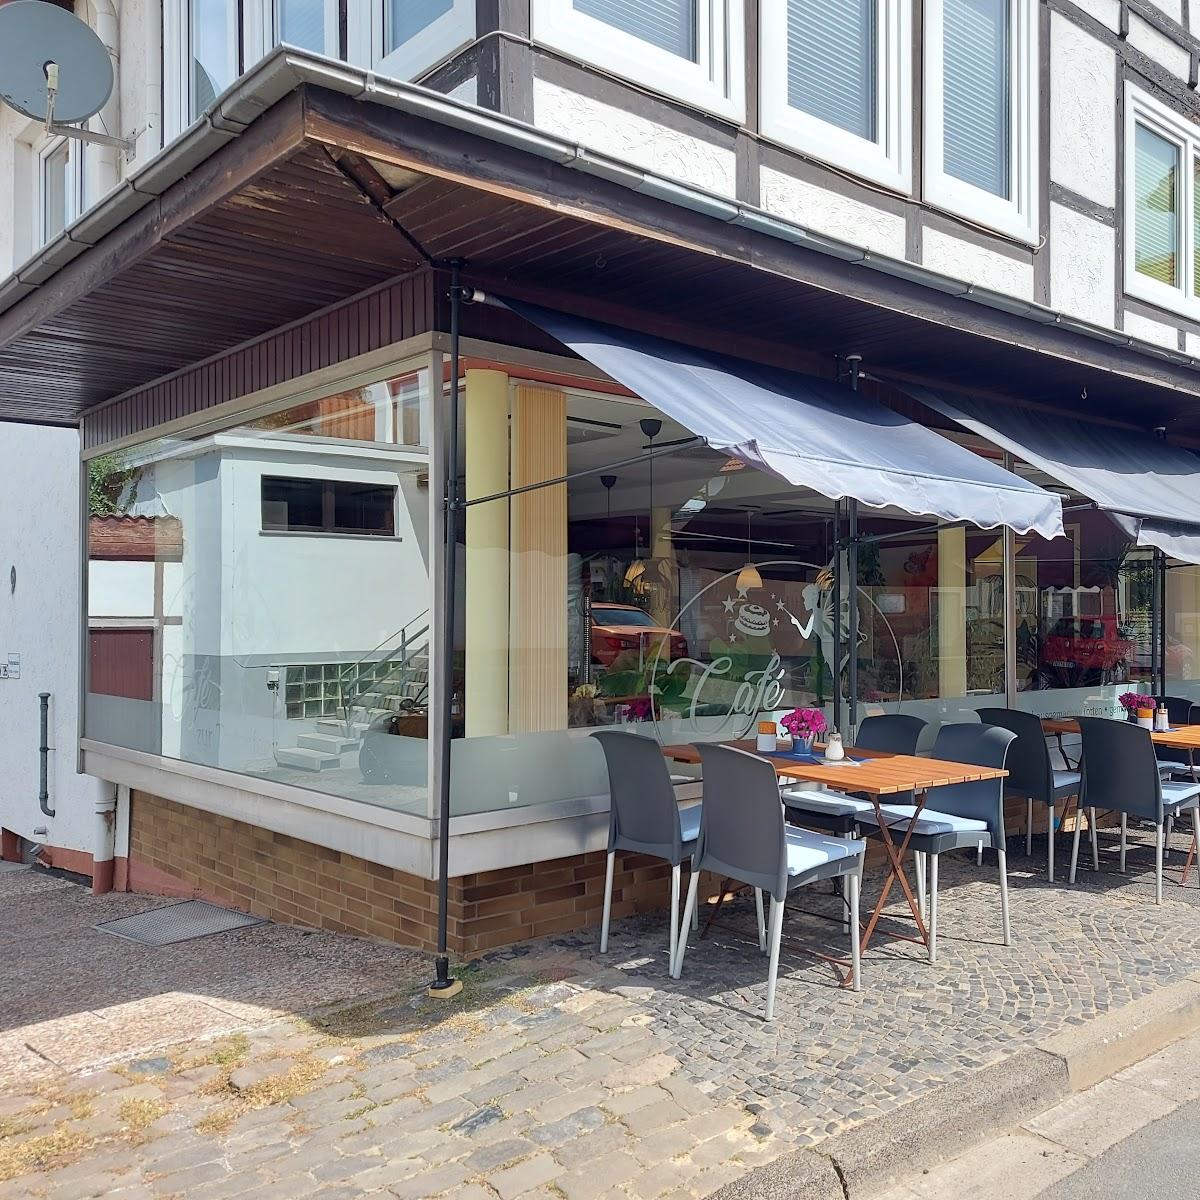 Restaurant "Café zur Tortenfee" in Waldeck